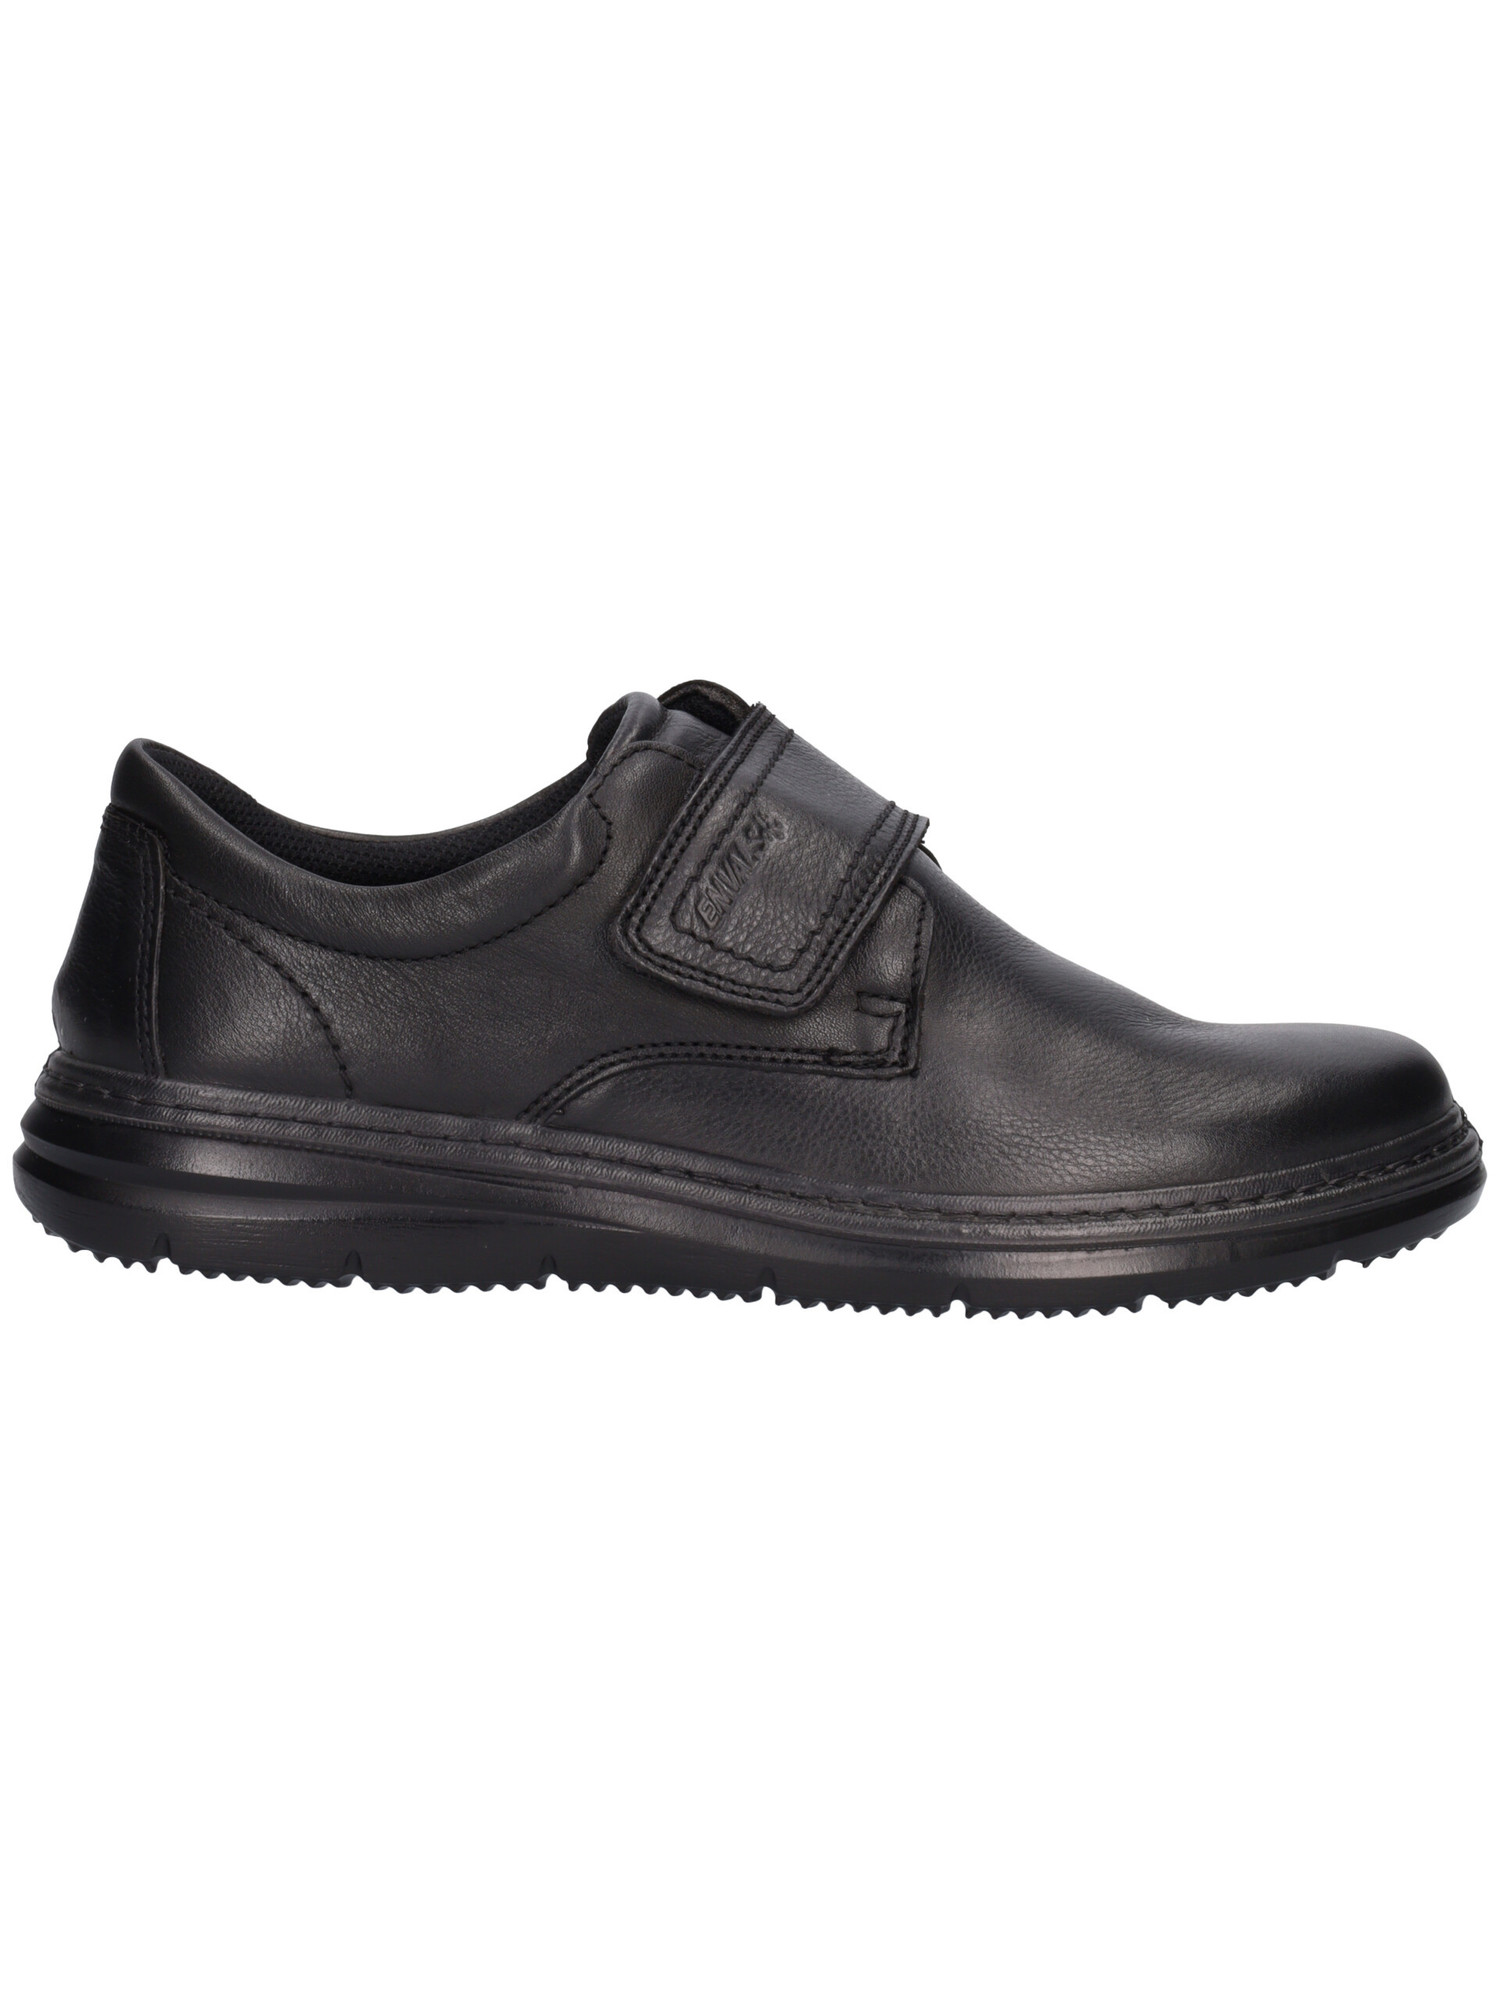 scarpa-casual-enval-soft-da-uomo-nera-f975b1